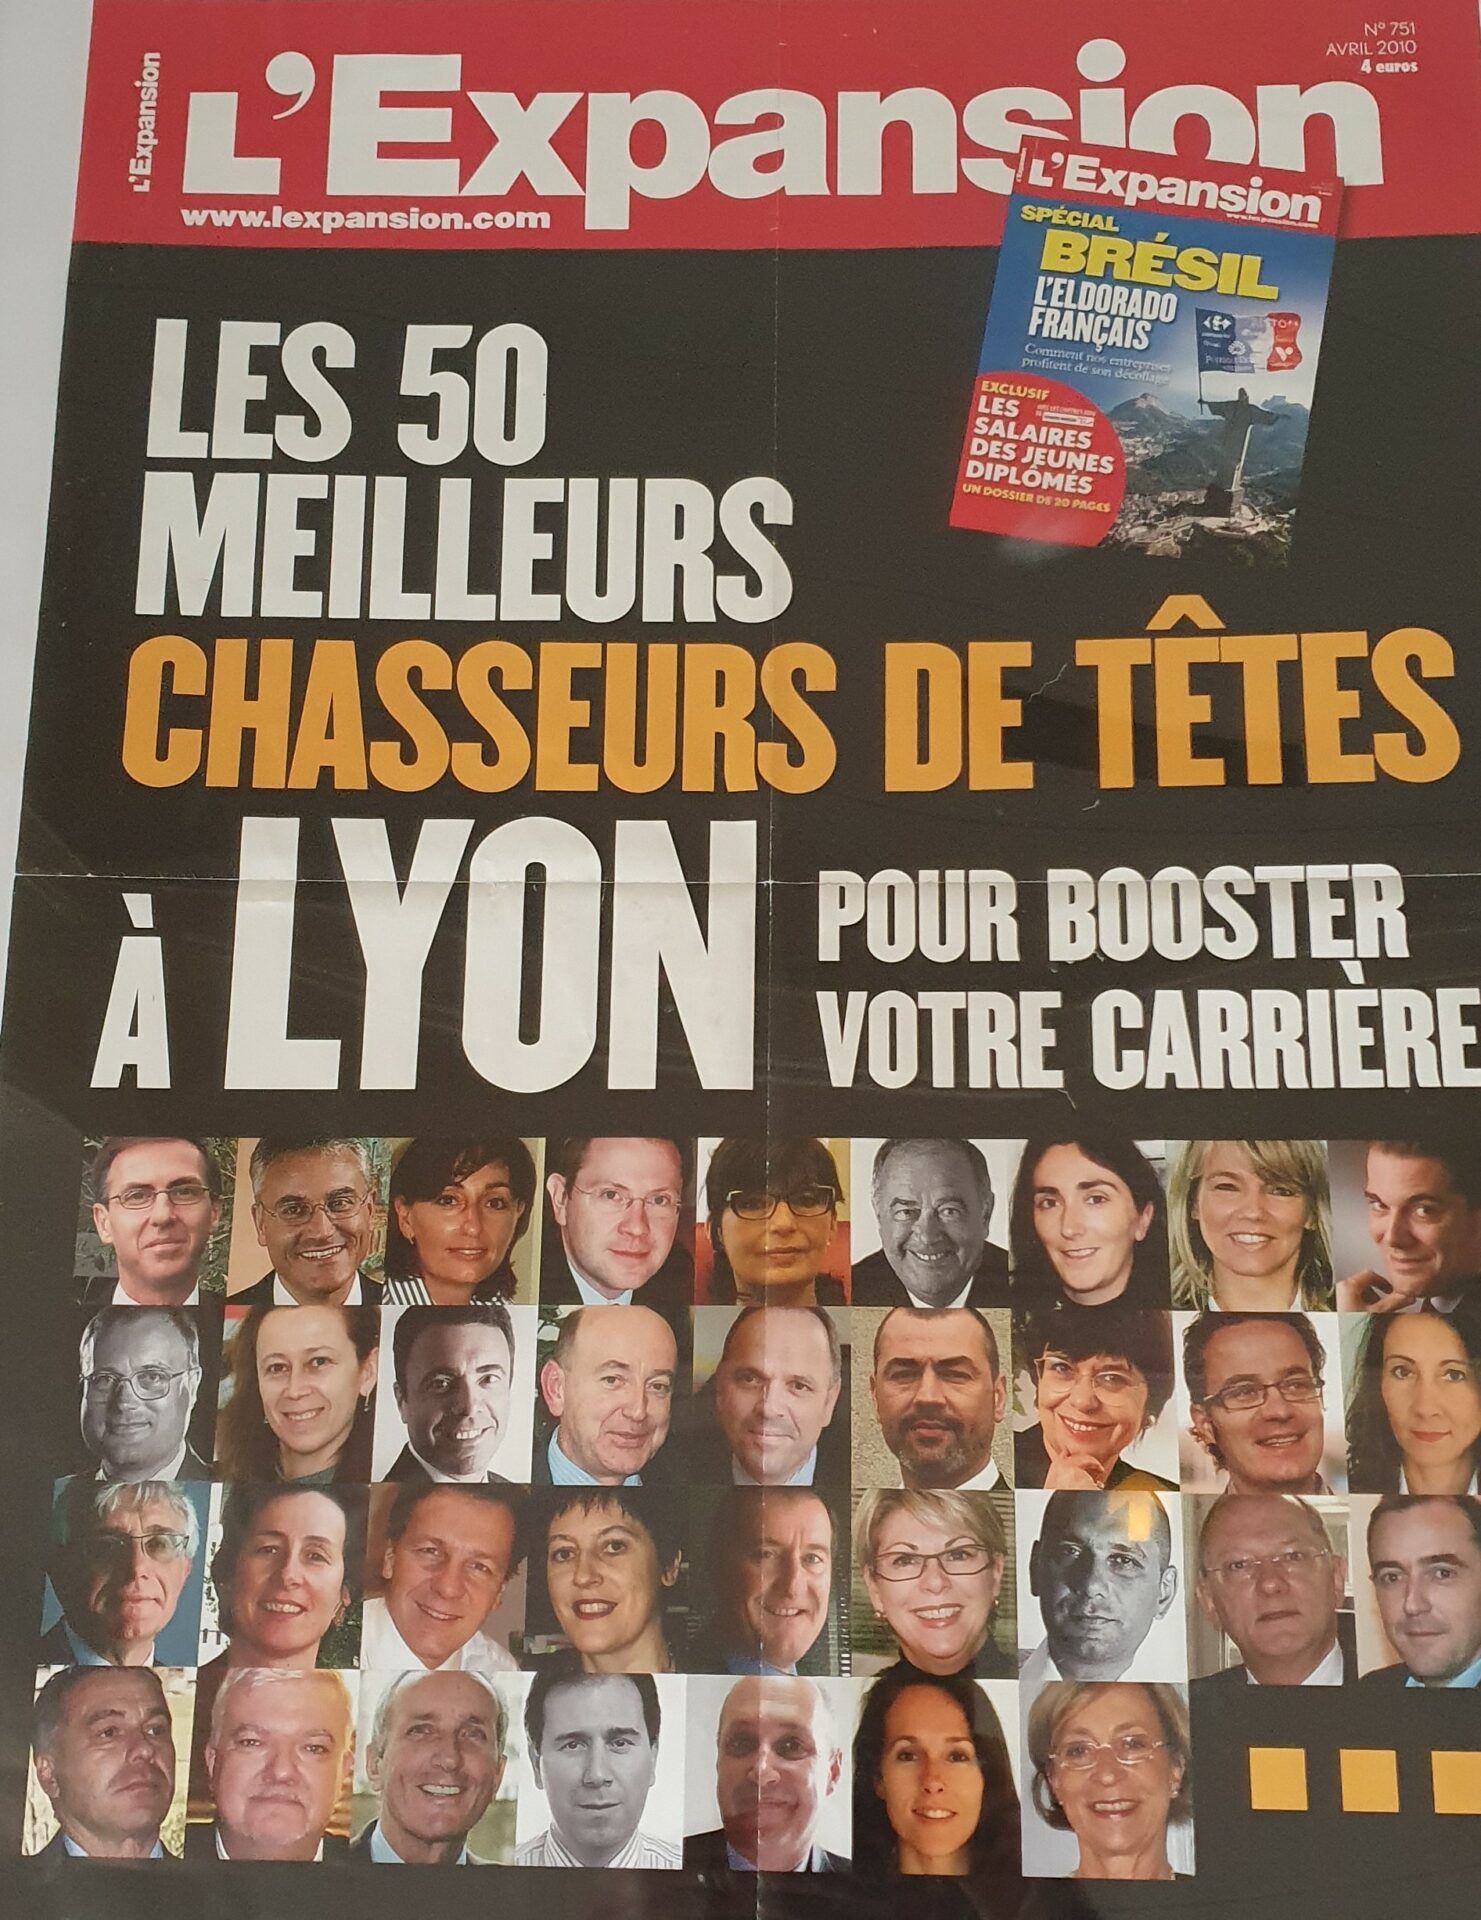 visuel de la couverture du magazine l'Expension avec les photos des 50 meilleurs chasseurs de têtes de Lyon